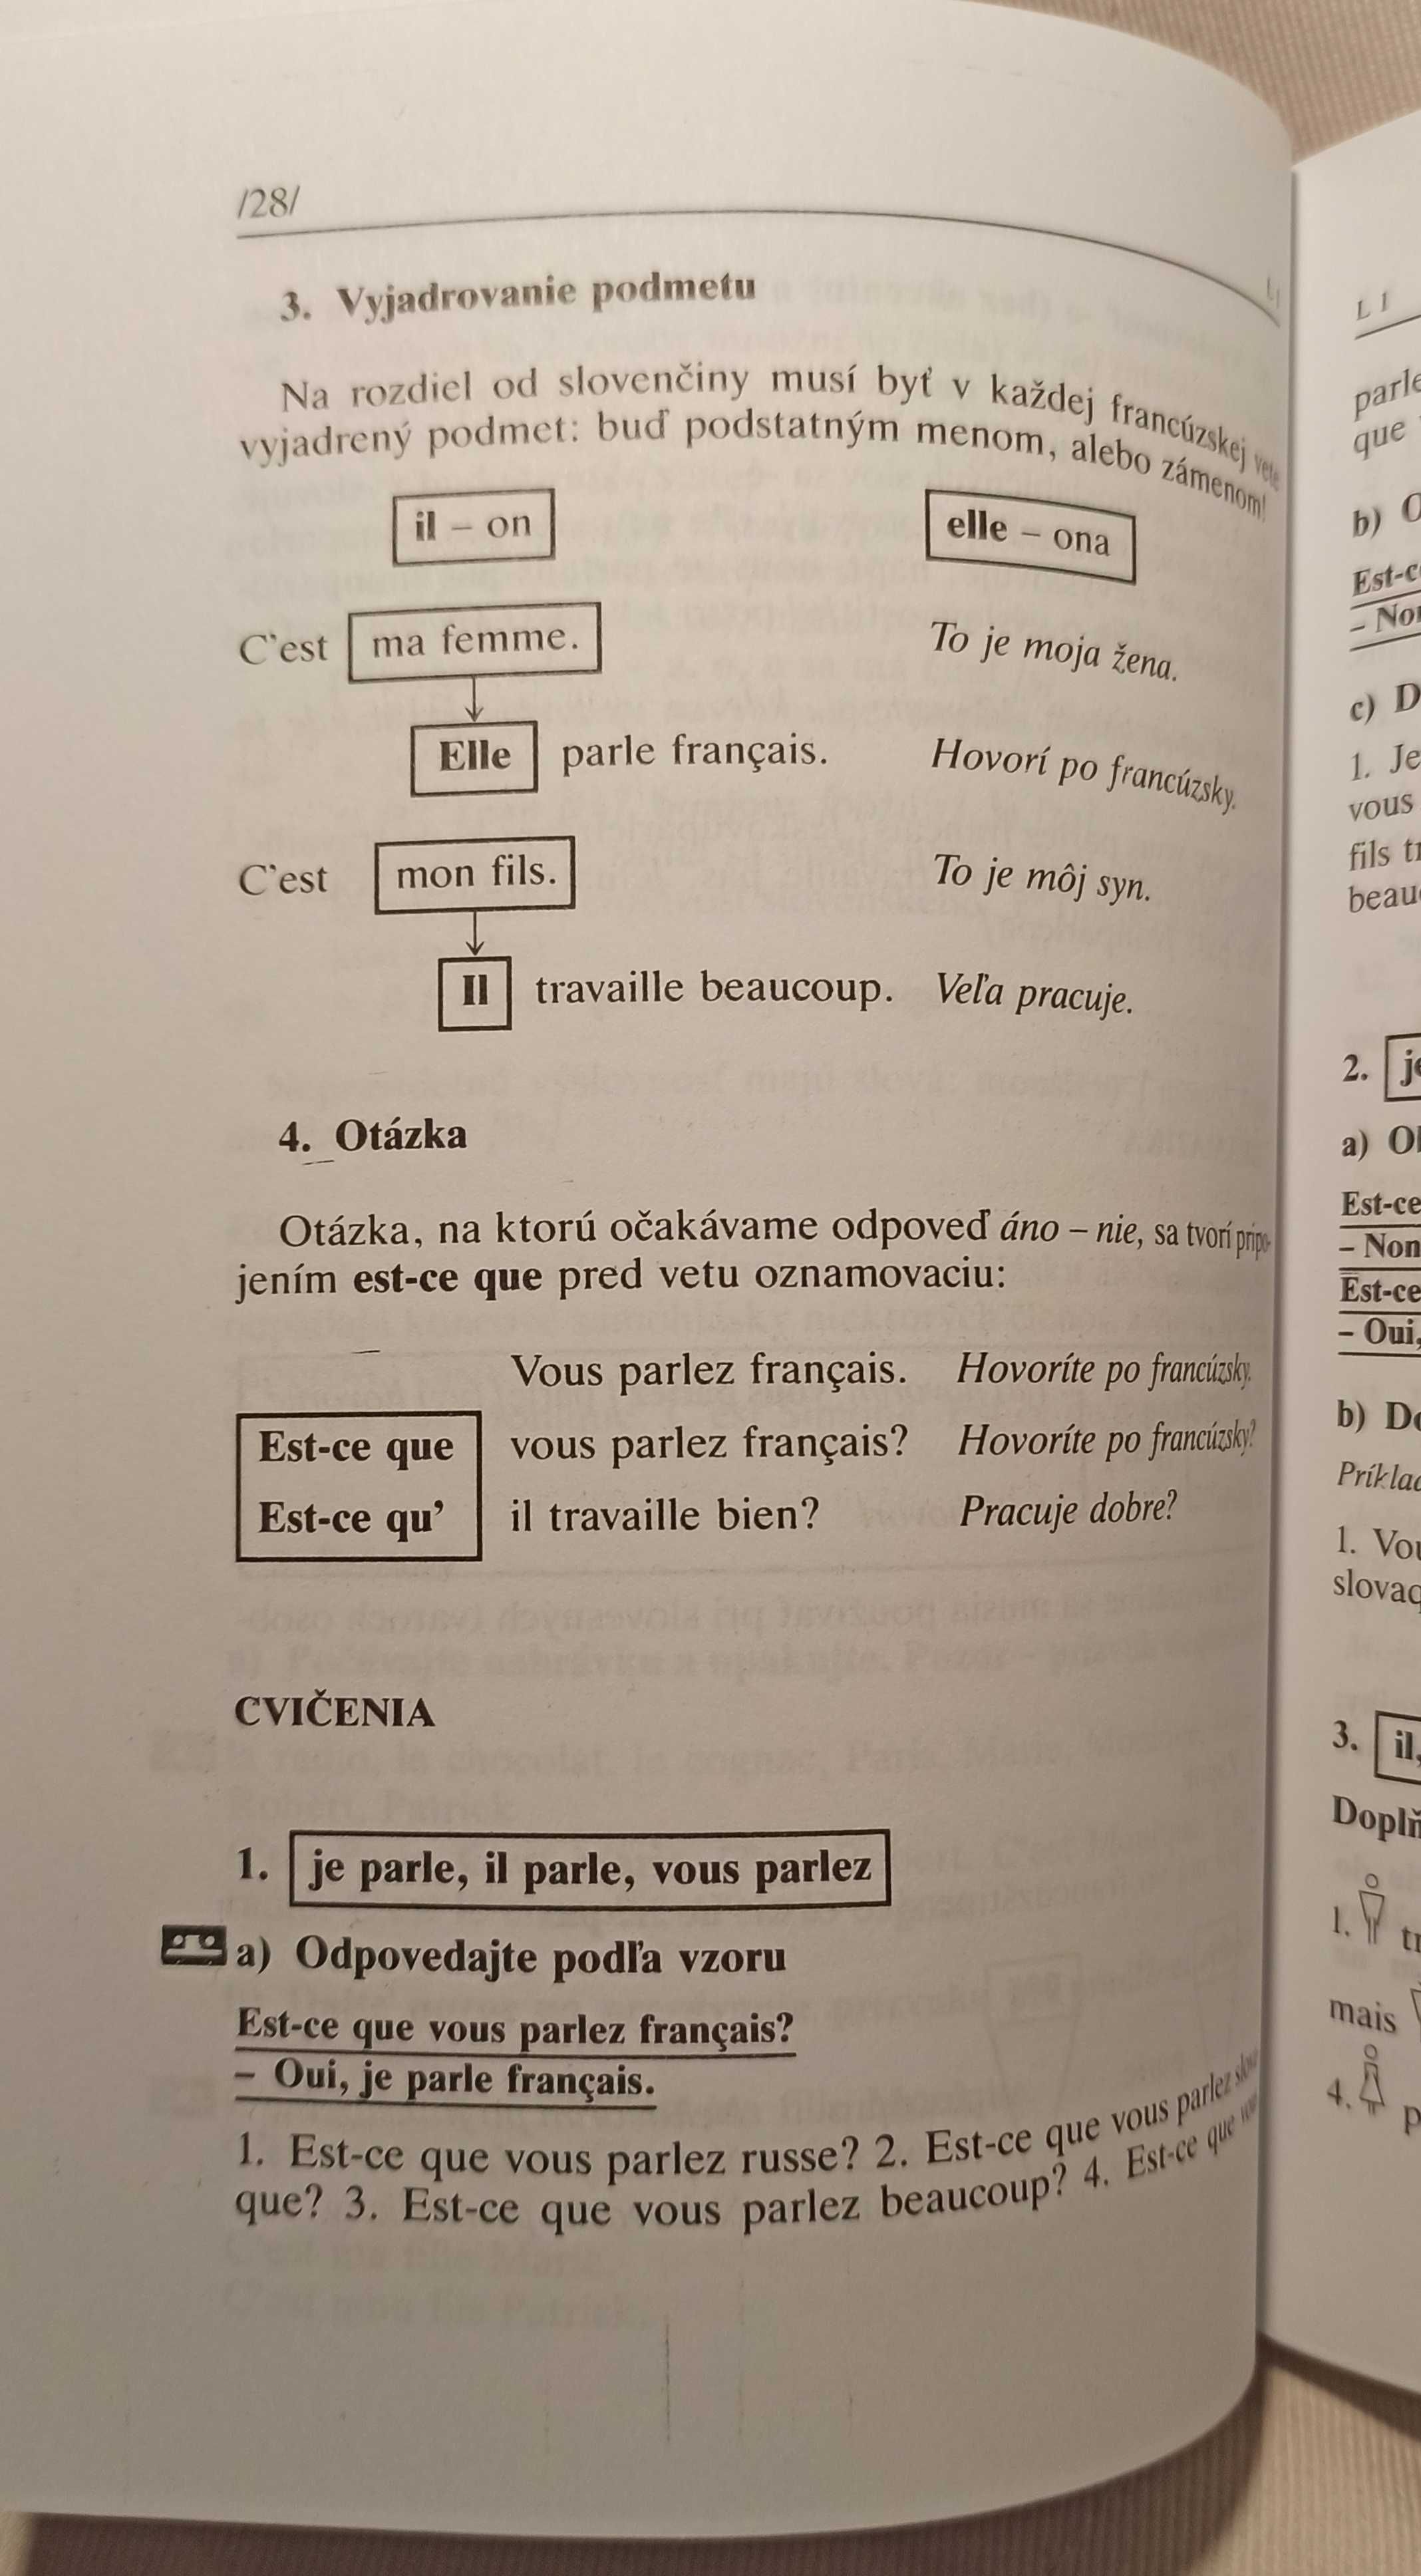 Podrecznik do nauki francuskiego po slowacku